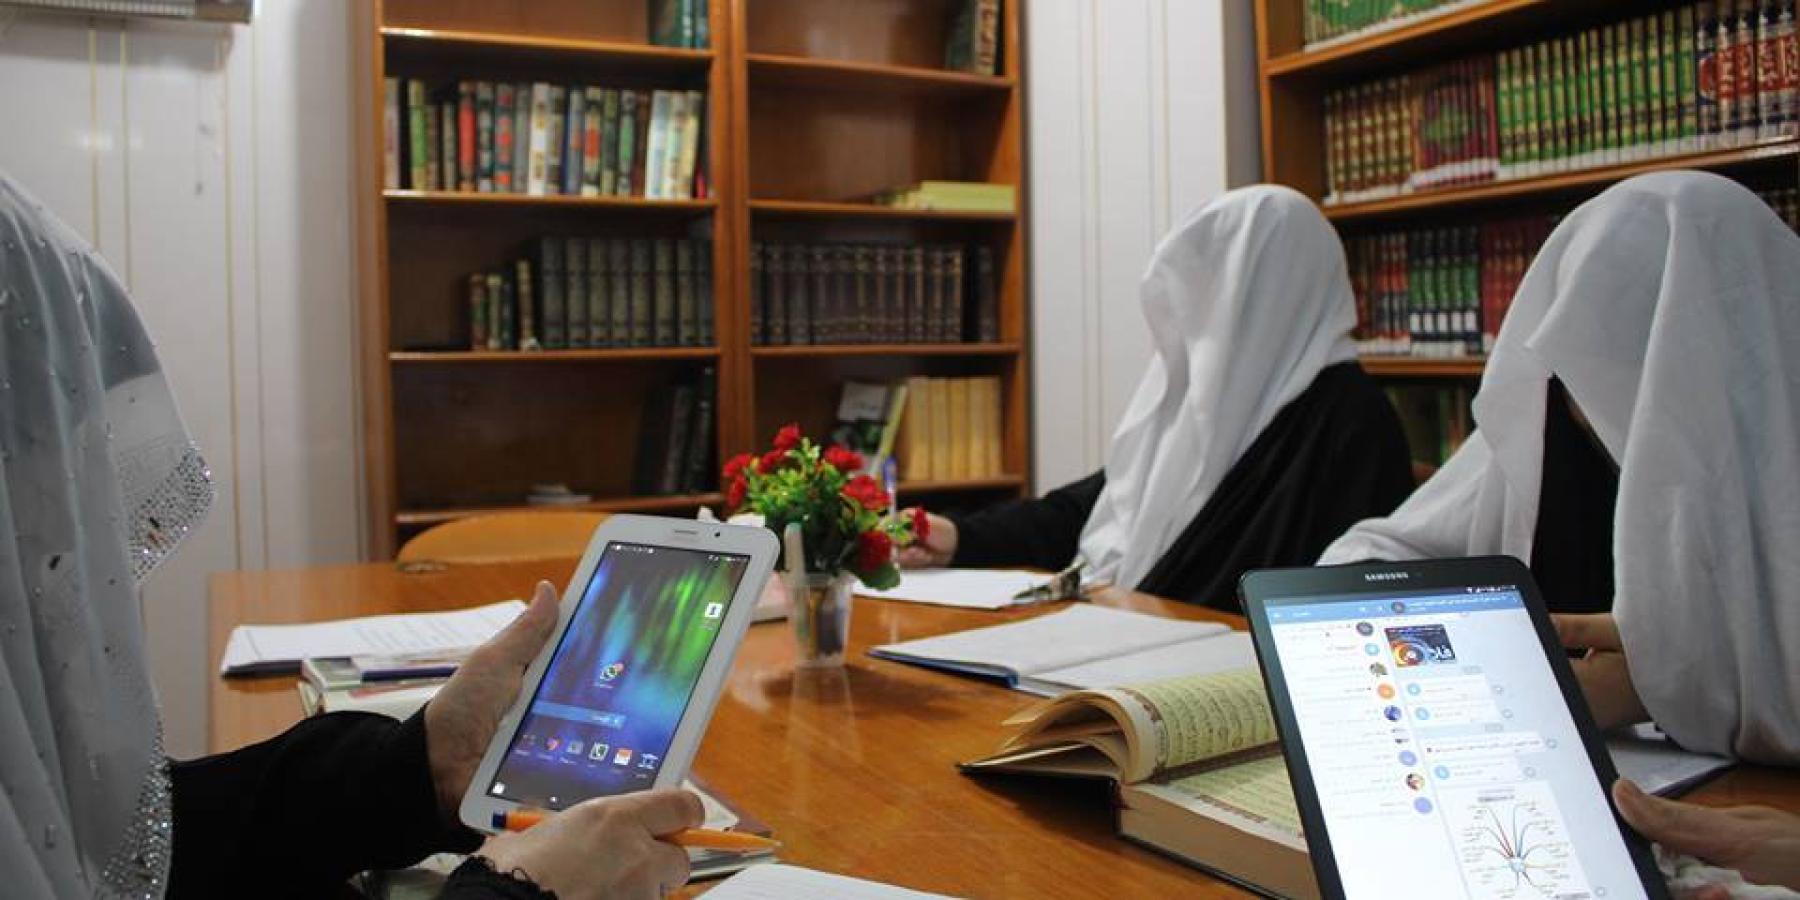 دورات الكوثر القرآنية النسوية في العتبة العلوية عبر وسائل التواصل الاجتماعي تحقق نجاحاً منقطع النظير